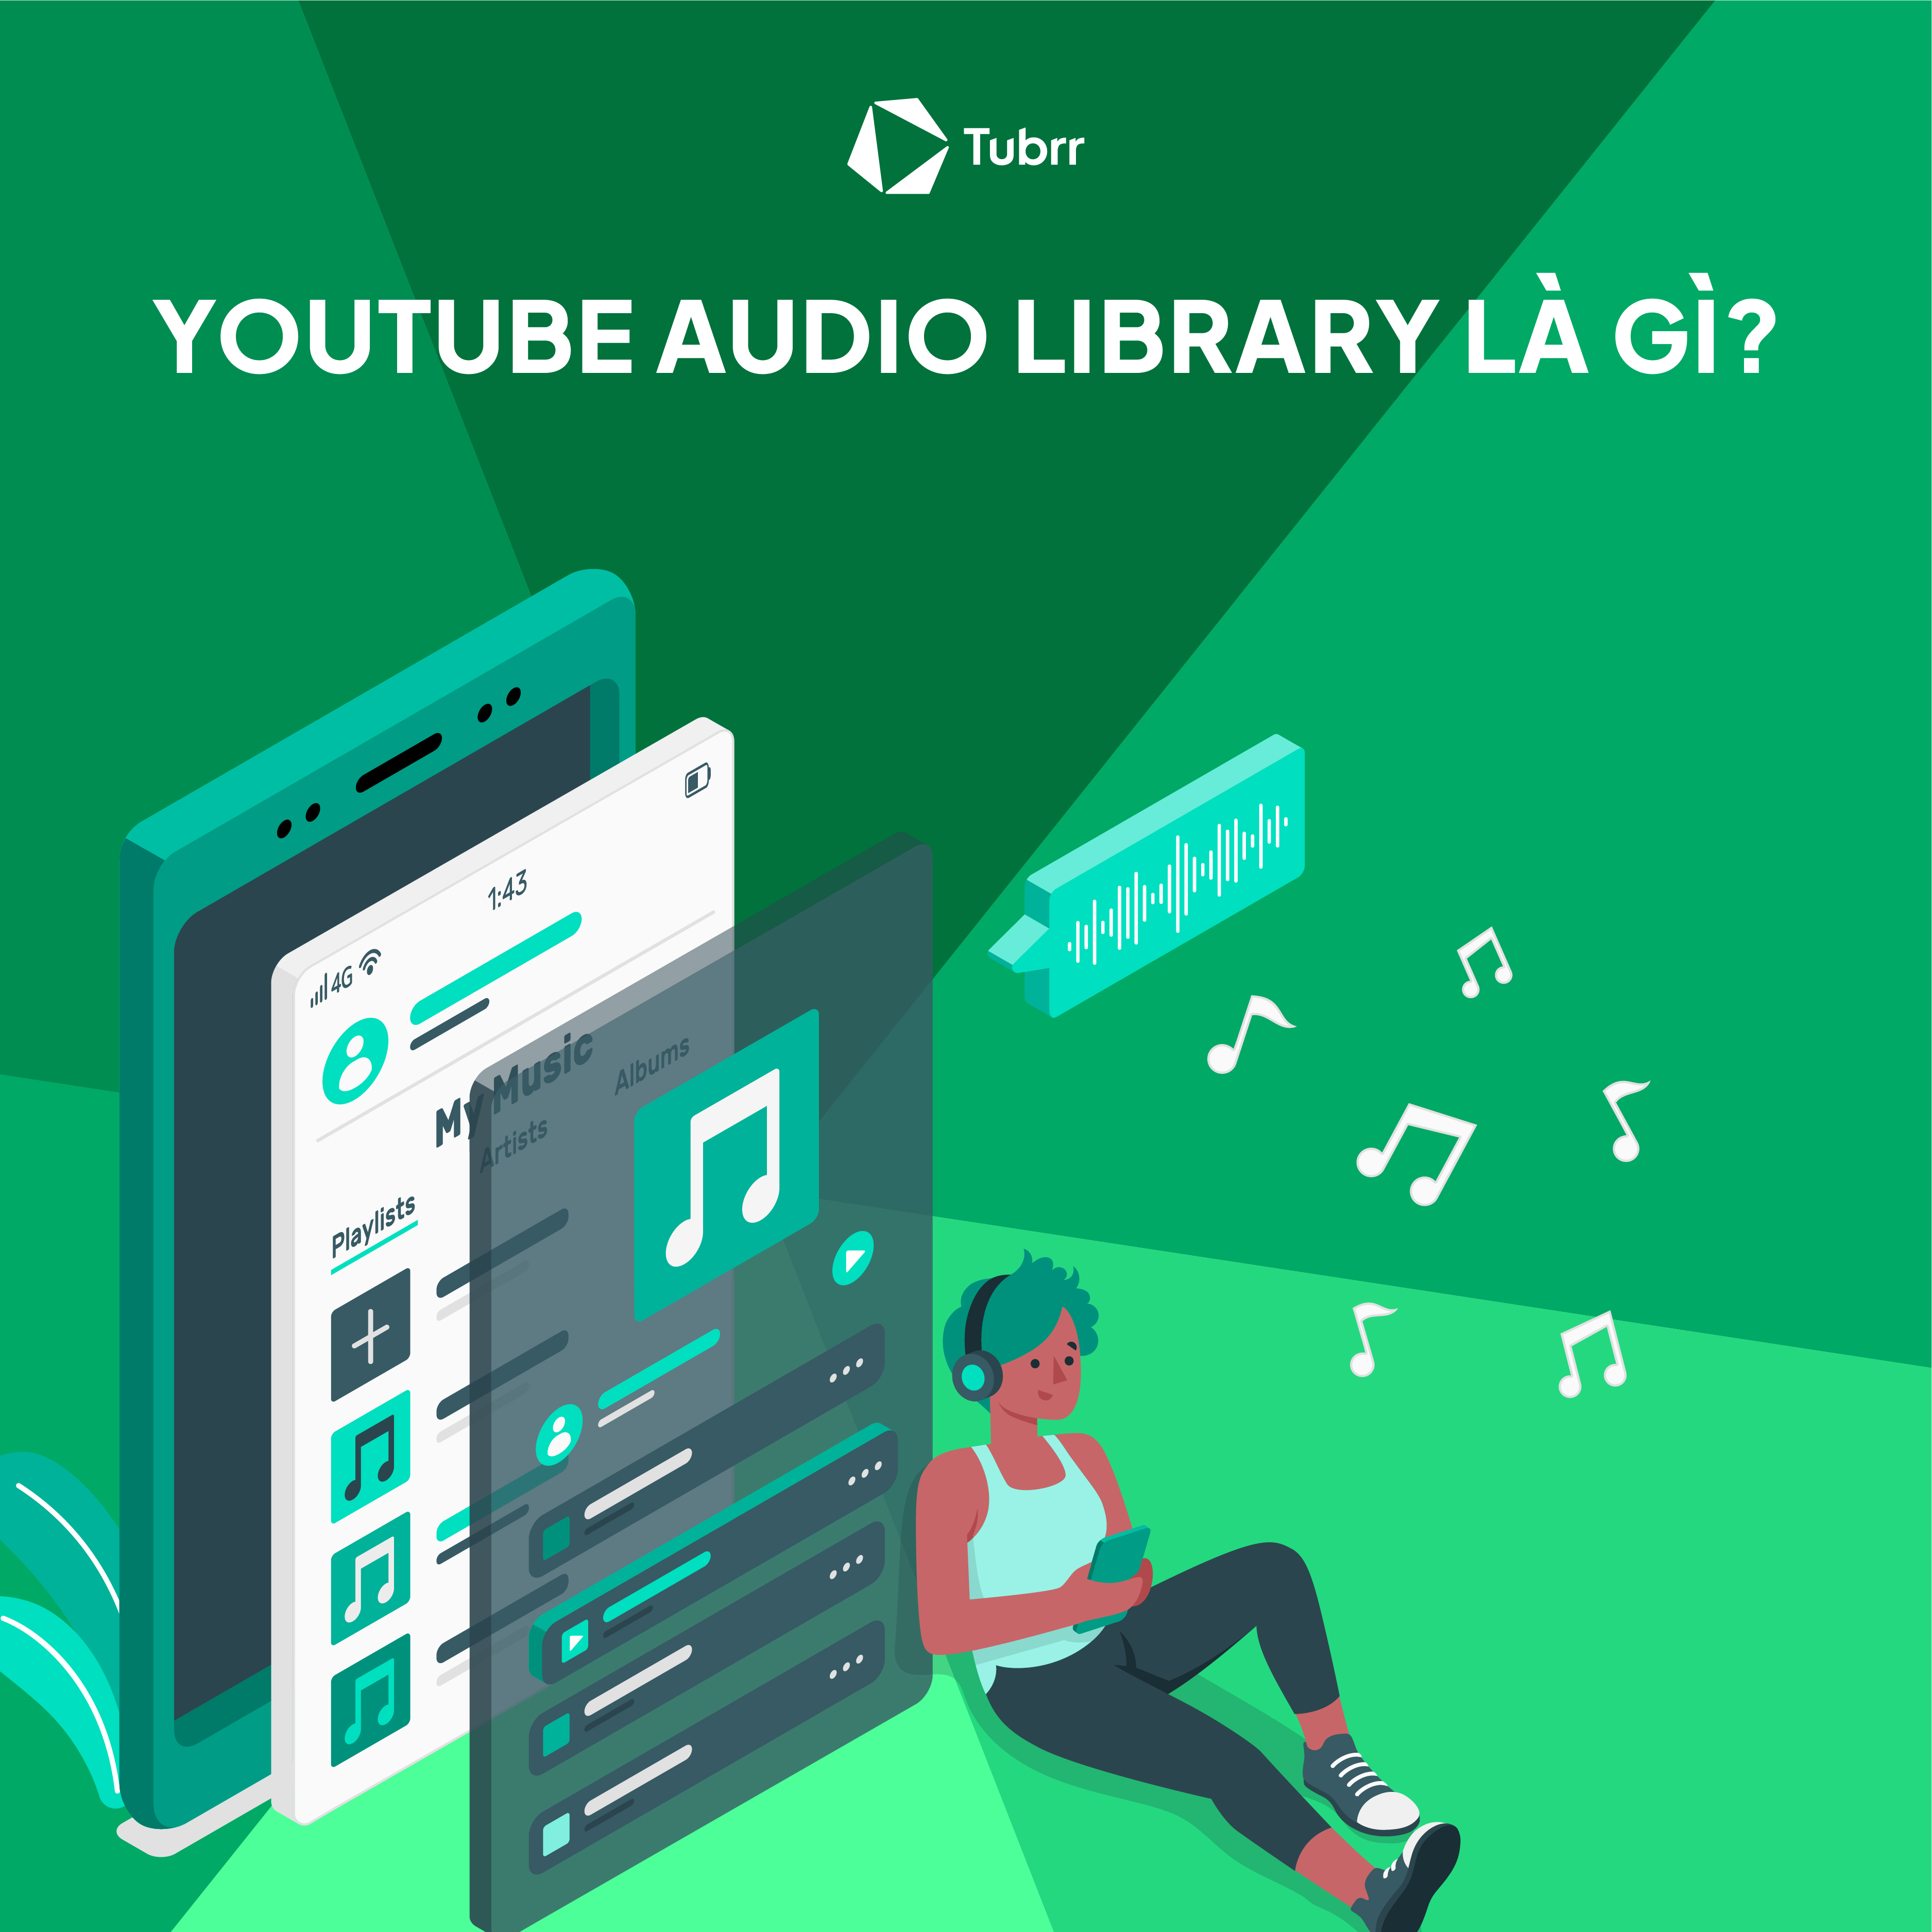 YouTube Audio Library là công cụ hỗ trợ đắc lực cho nhà sáng tạo